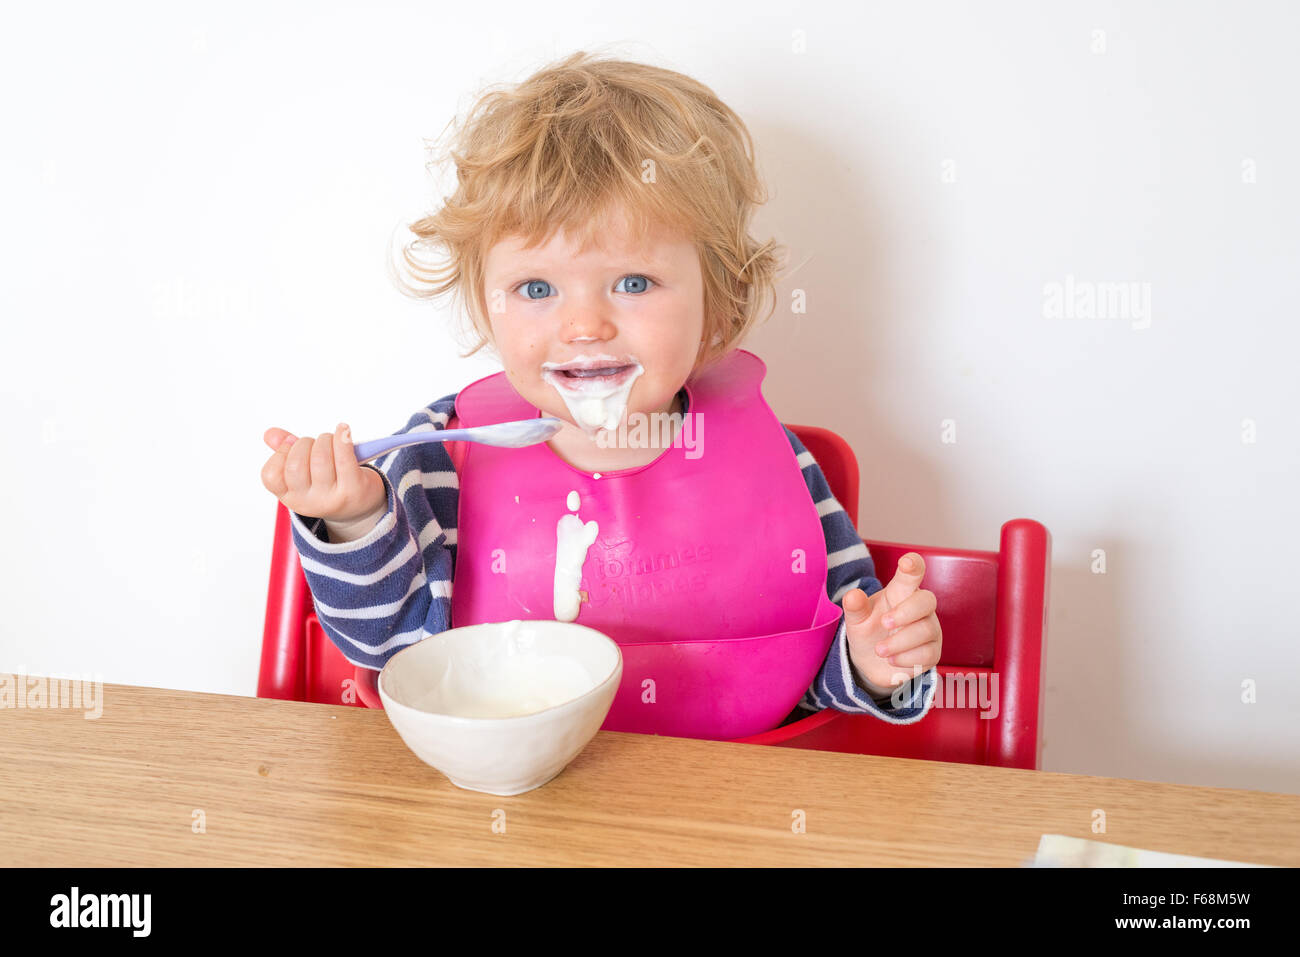 Un an baby eating yogurt, salissent en Angleterre, RU Banque D'Images